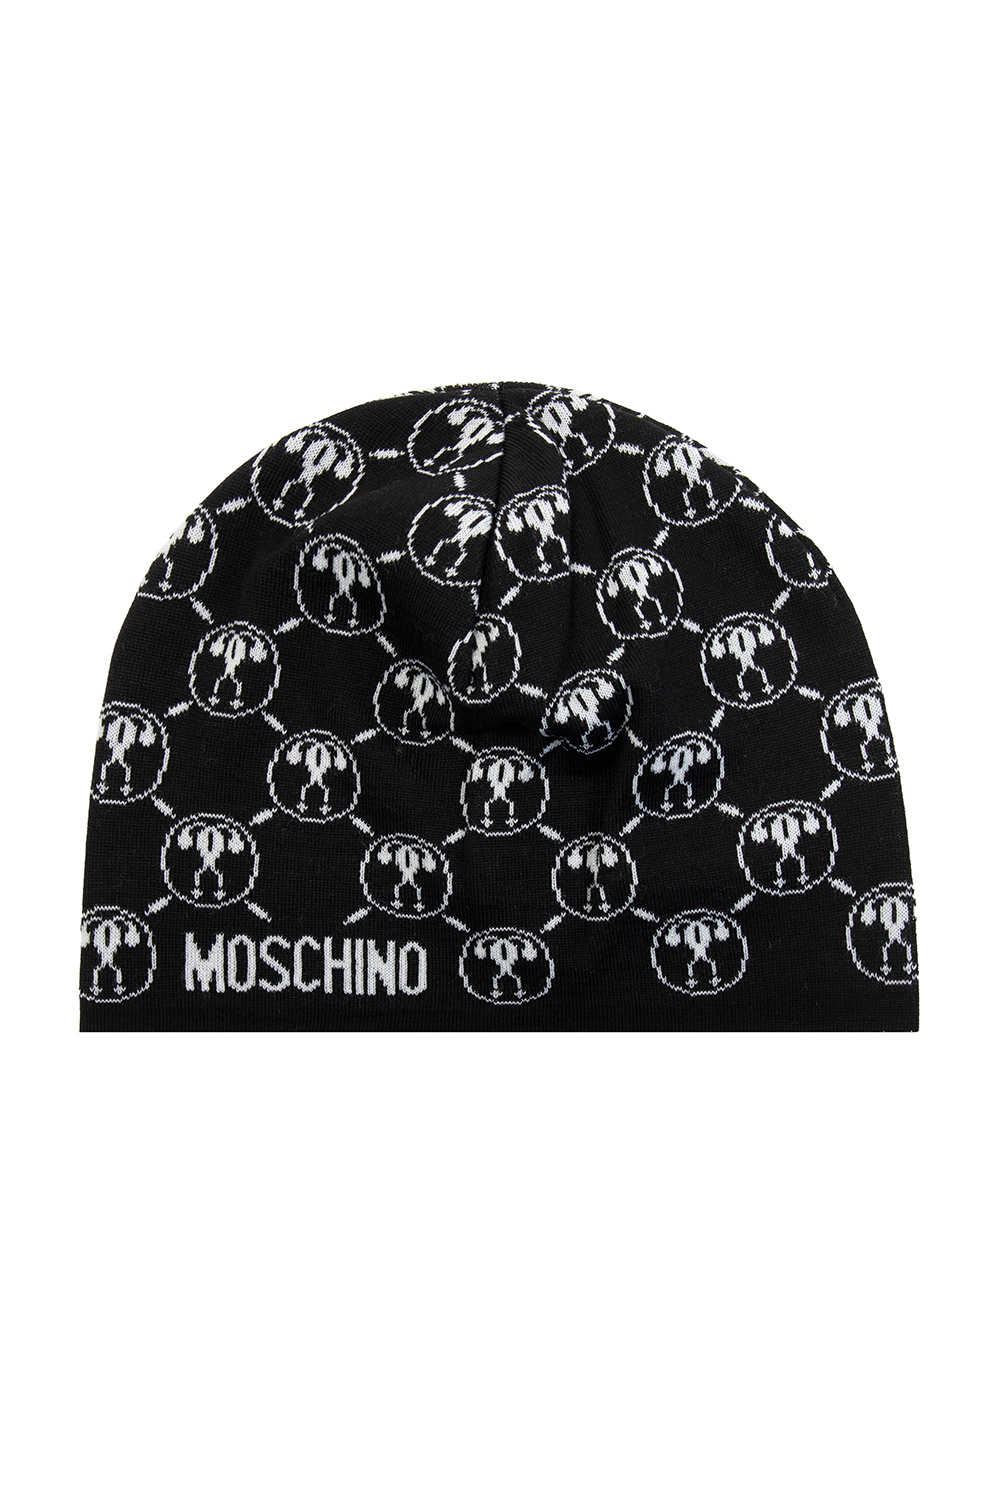 Moschino Nick Fouquet tie-dye fedora hat